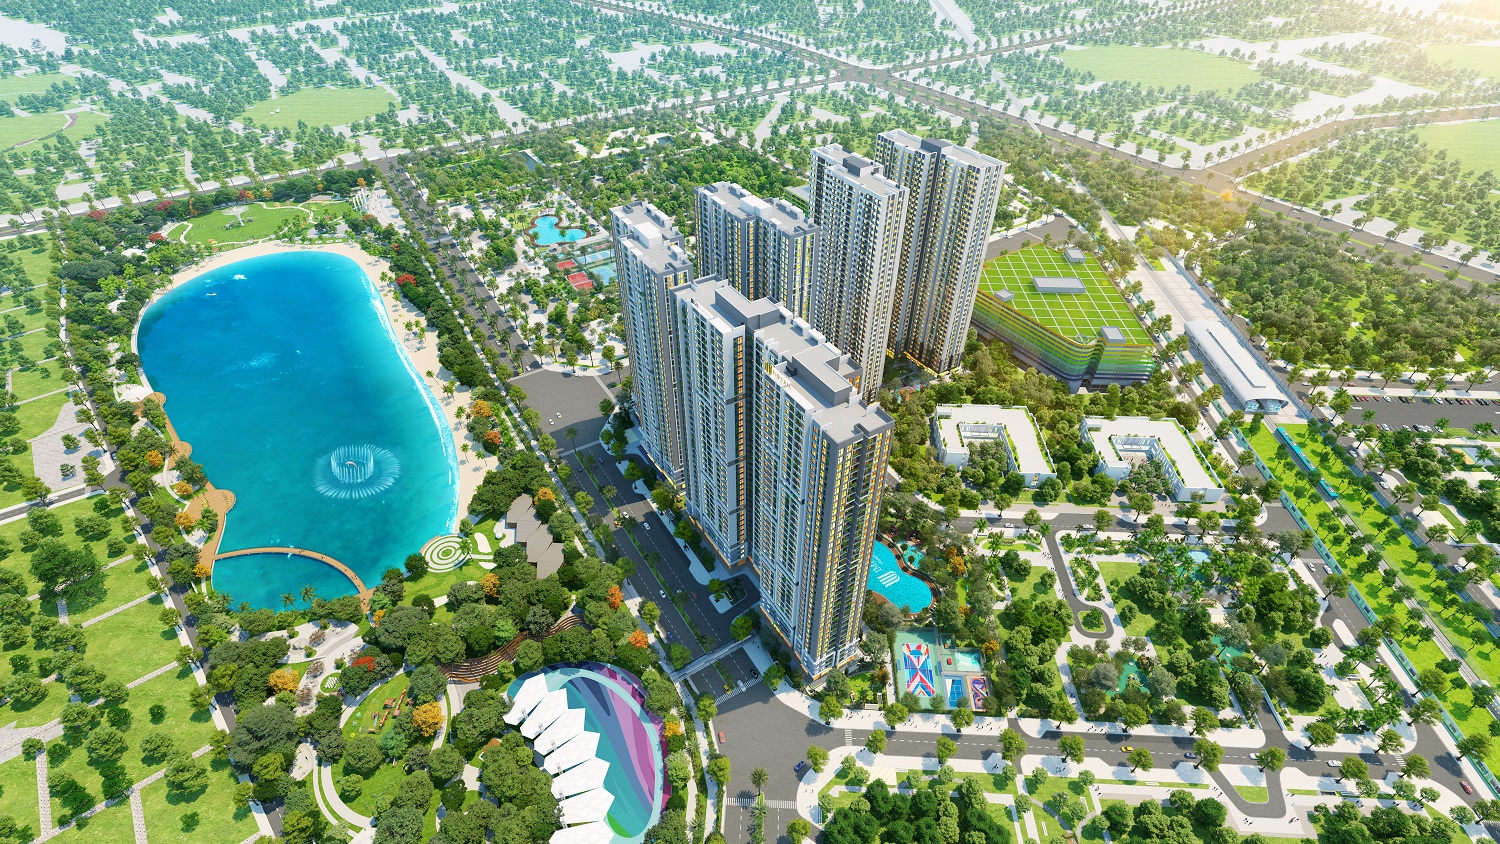 Imperia Smart City - 1 dự án do MIK Group phát triển tọa lạc tại phía Tây HN từng “làm mưap/làm gió” trên thị trường bất động sản